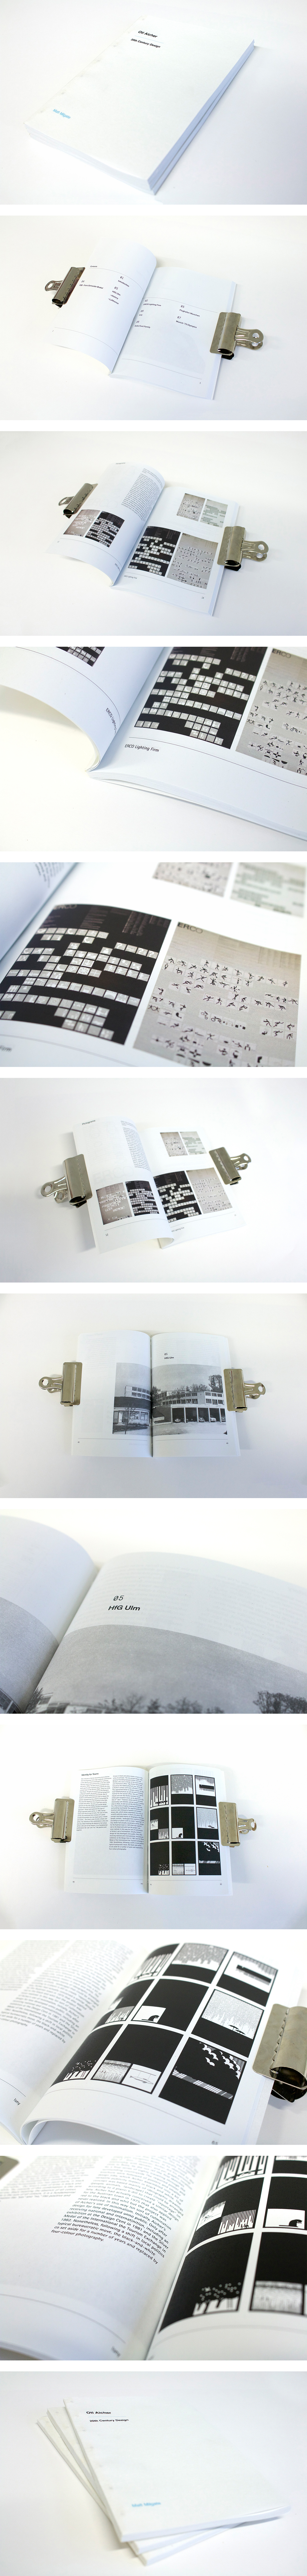 brand otl aicher OtlAicher swiss a5 editorial book design lars muller larsmuller perfectbound binding